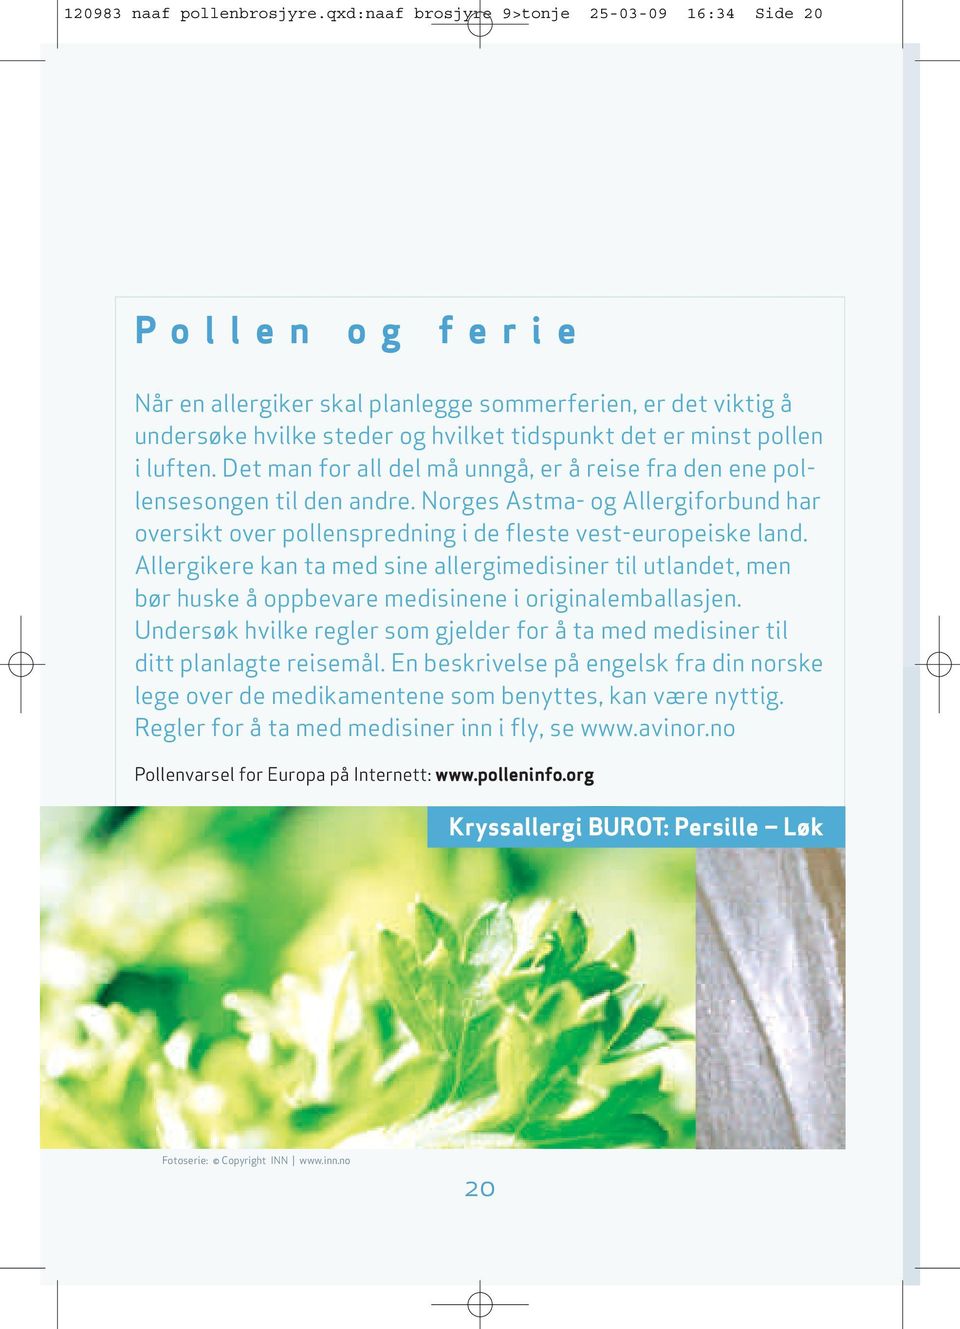 luften. Det man for all del må unngå, er å reise fra den ene pollensesongen til den andre. Norges Astma- og Allergiforbund har oversikt over pollenspredning i de fleste vest-europeiske land.